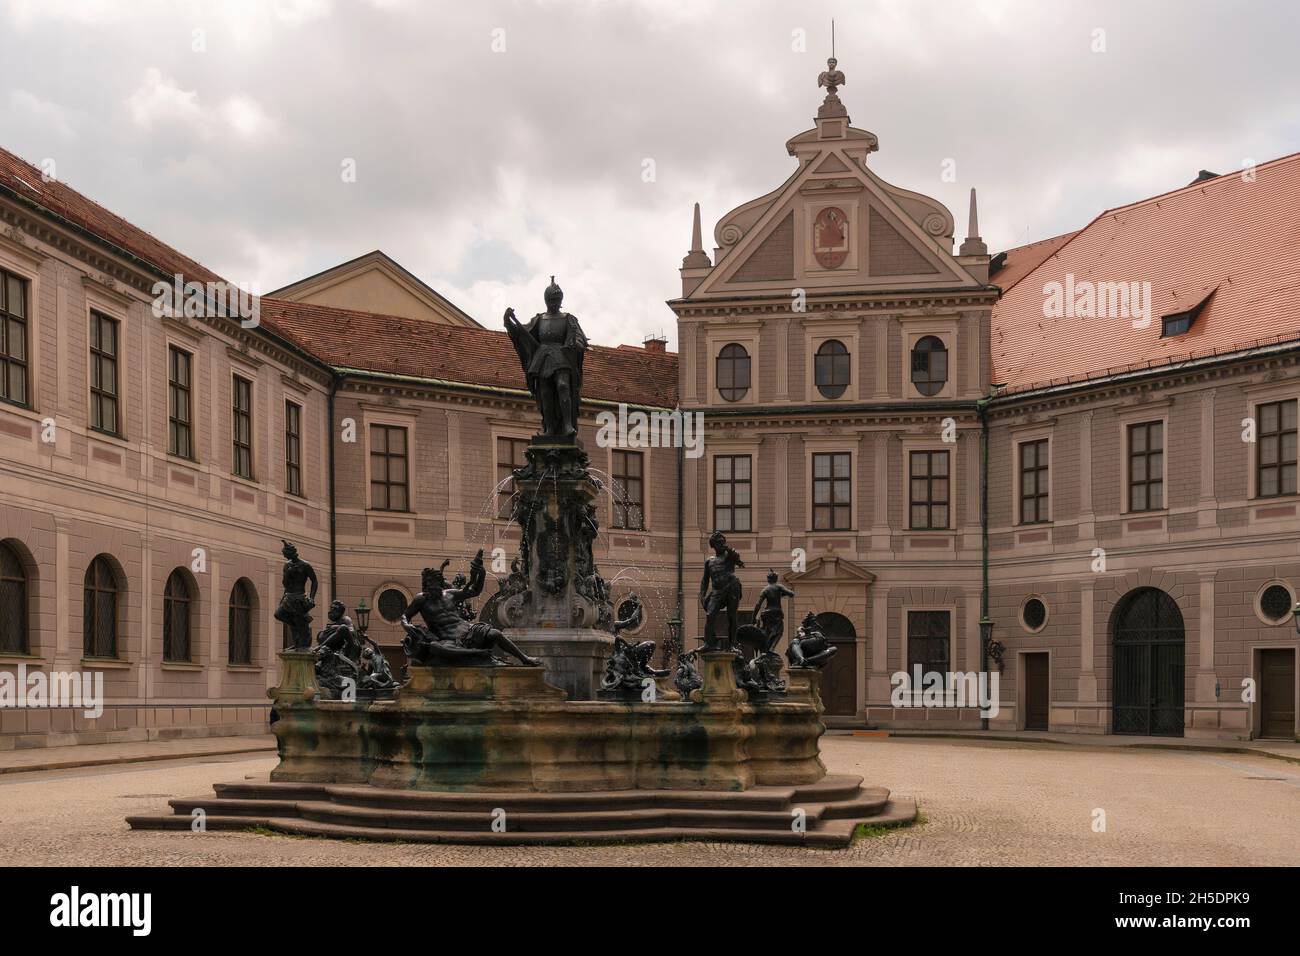 23 maggio 2019 Monaco di Baviera, Germania - cortile ottagonale di Monaco di Baviera Residenz, chiamato anche cortile della Fontana (Brunnenhof) e edificio Antiquarium Foto Stock